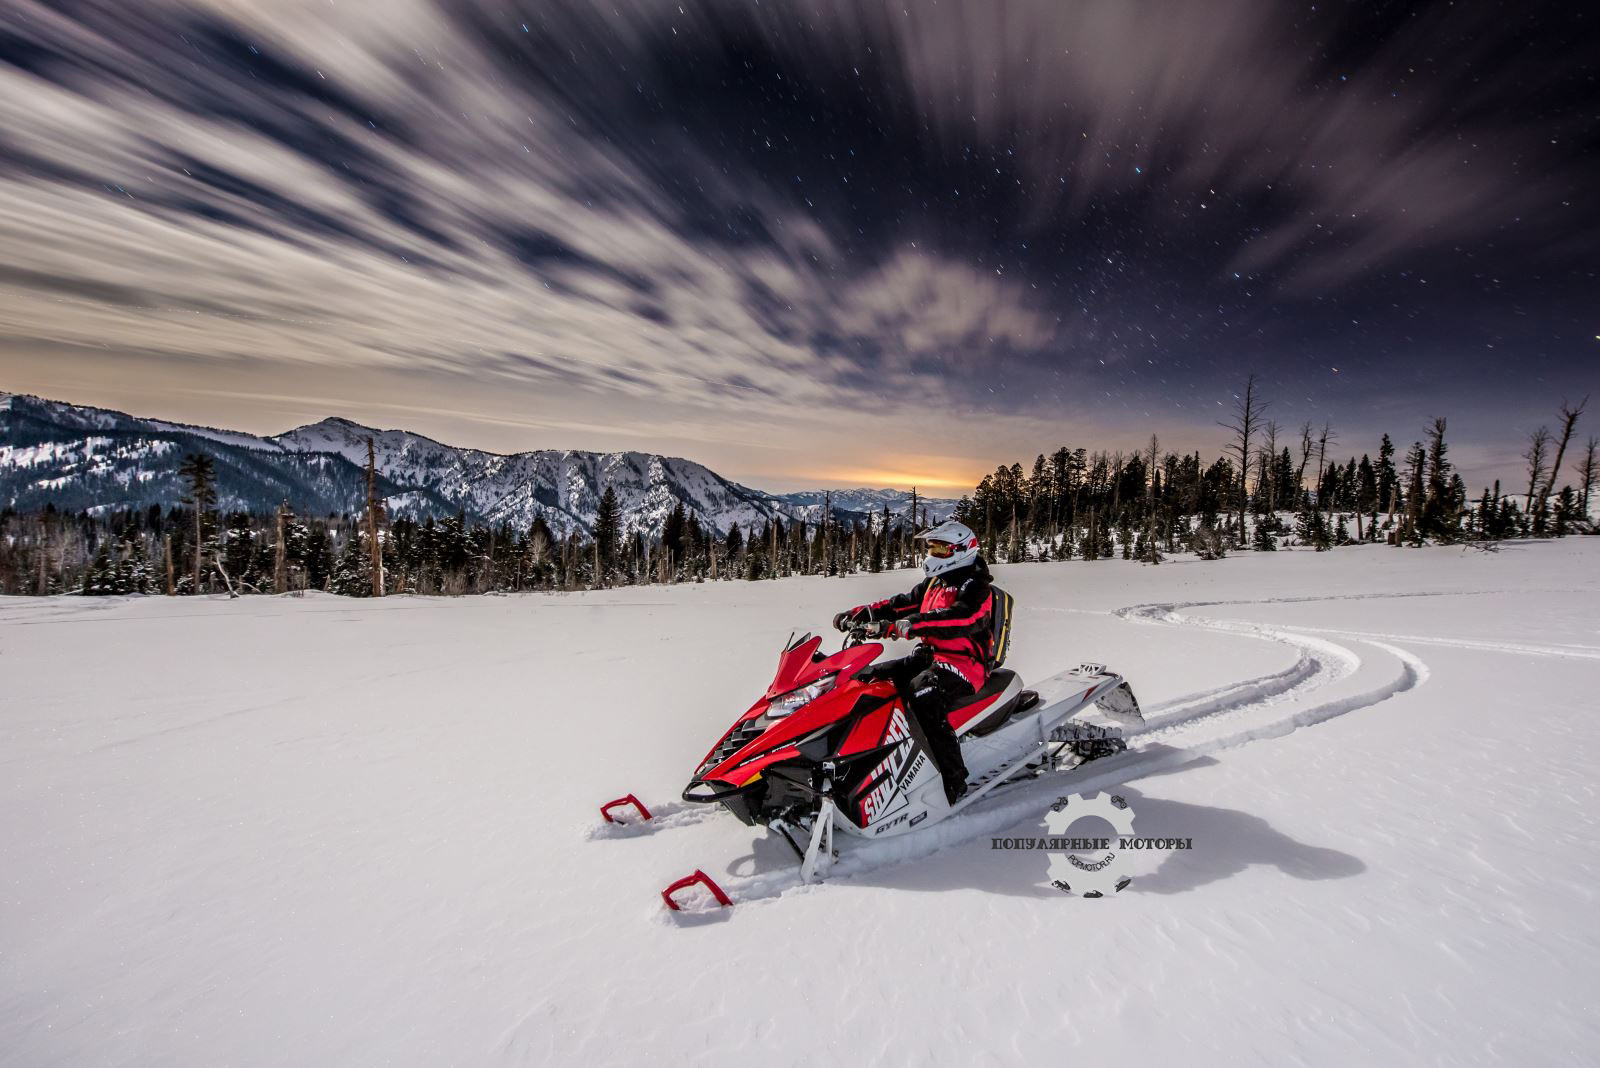 Фото первого взгляда на горные снегоходы Yamaha SR Viper MTX 2015 по нетронутому снегу